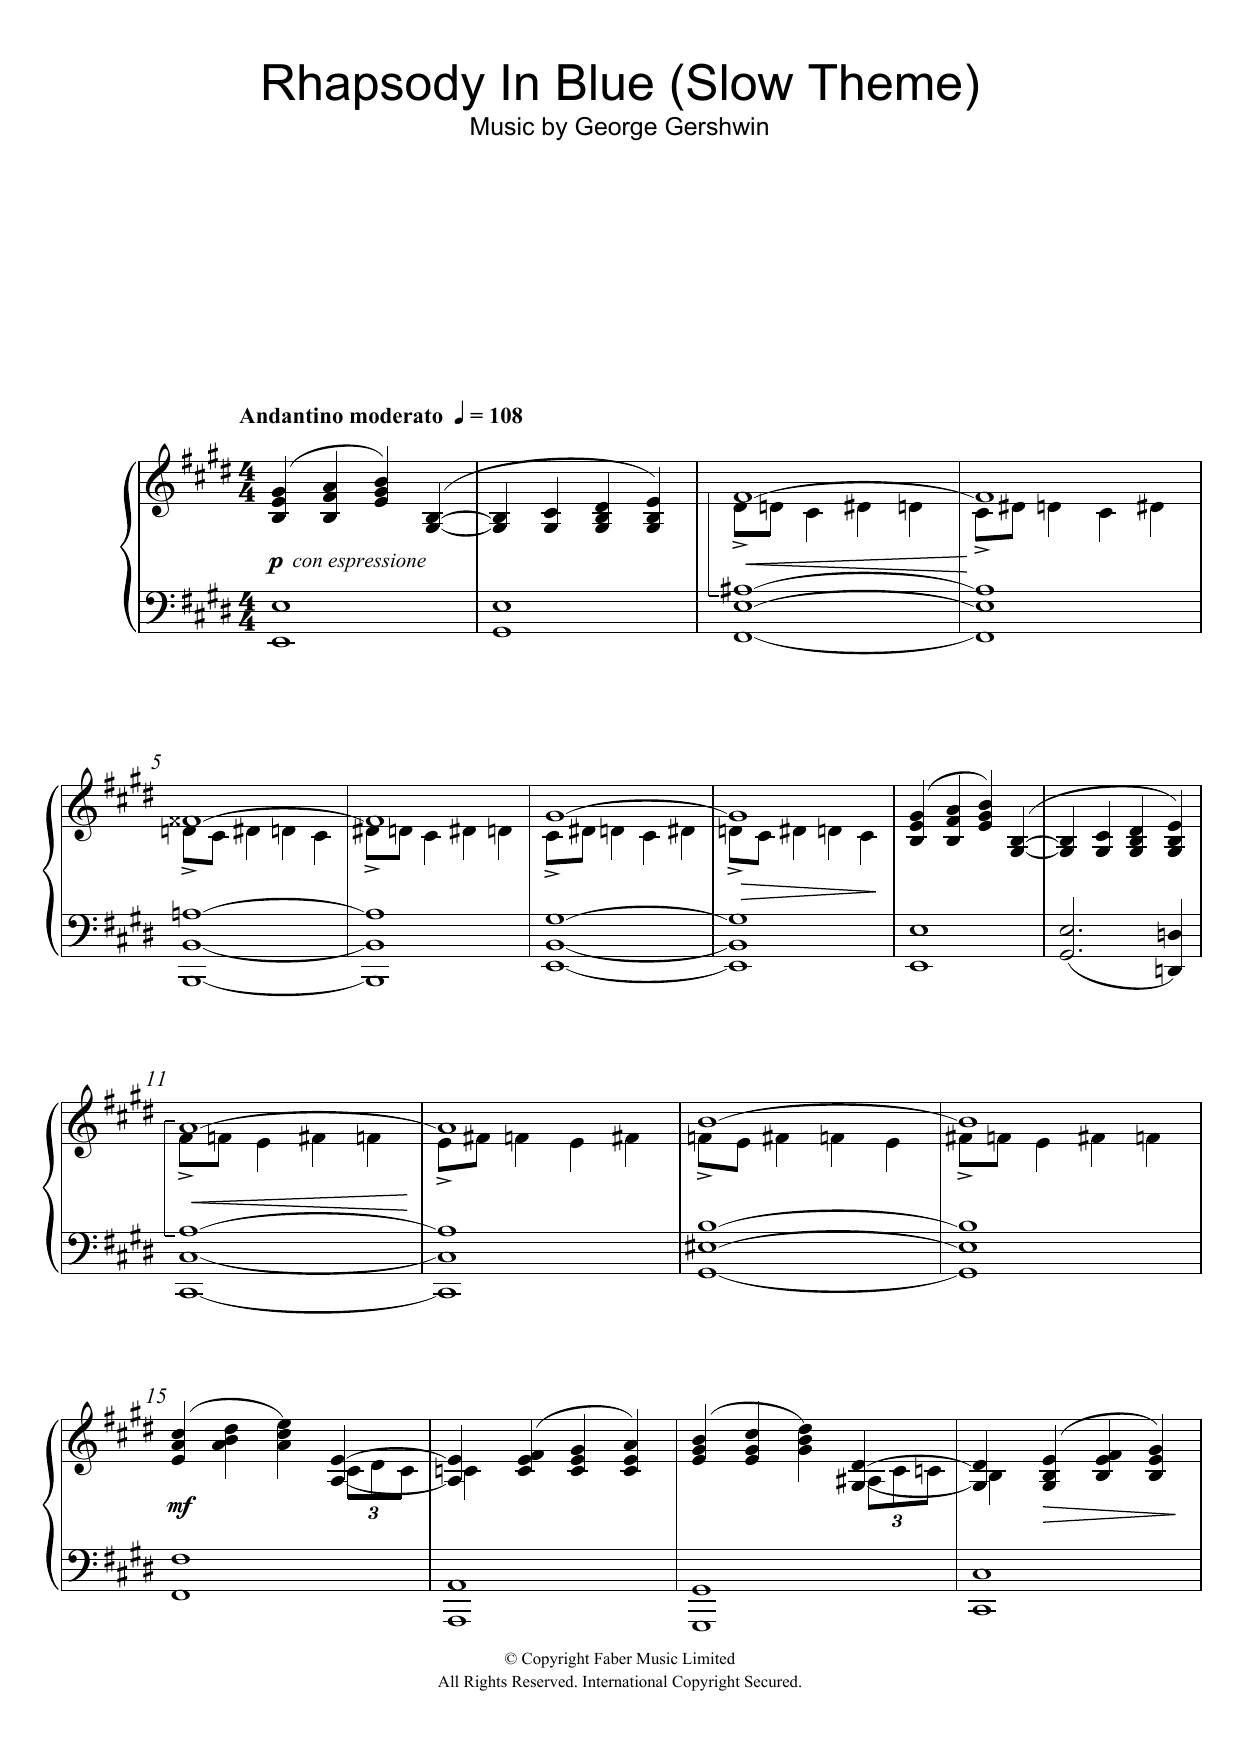 Download George Gershwin Rhapsody In Blue (Slow Theme) Sheet Music